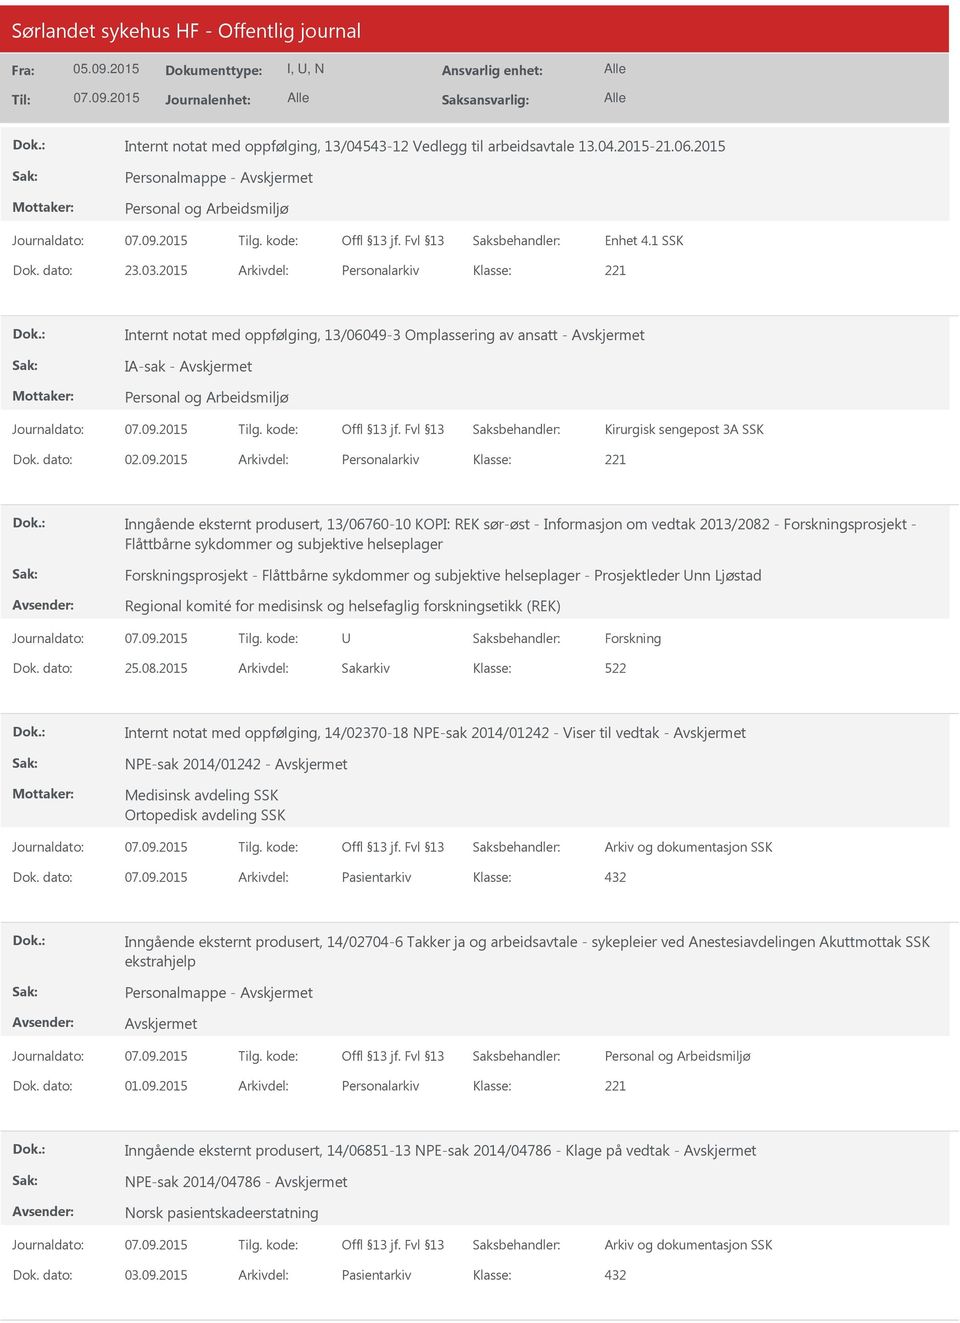 2015 Arkivdel: Personalarkiv Inngående eksternt produsert, 13/06760-10 KOPI: REK sør-øst - Informasjon om vedtak 2013/2082 - Forskningsprosjekt - Flåttbårne sykdommer og subjektive helseplager